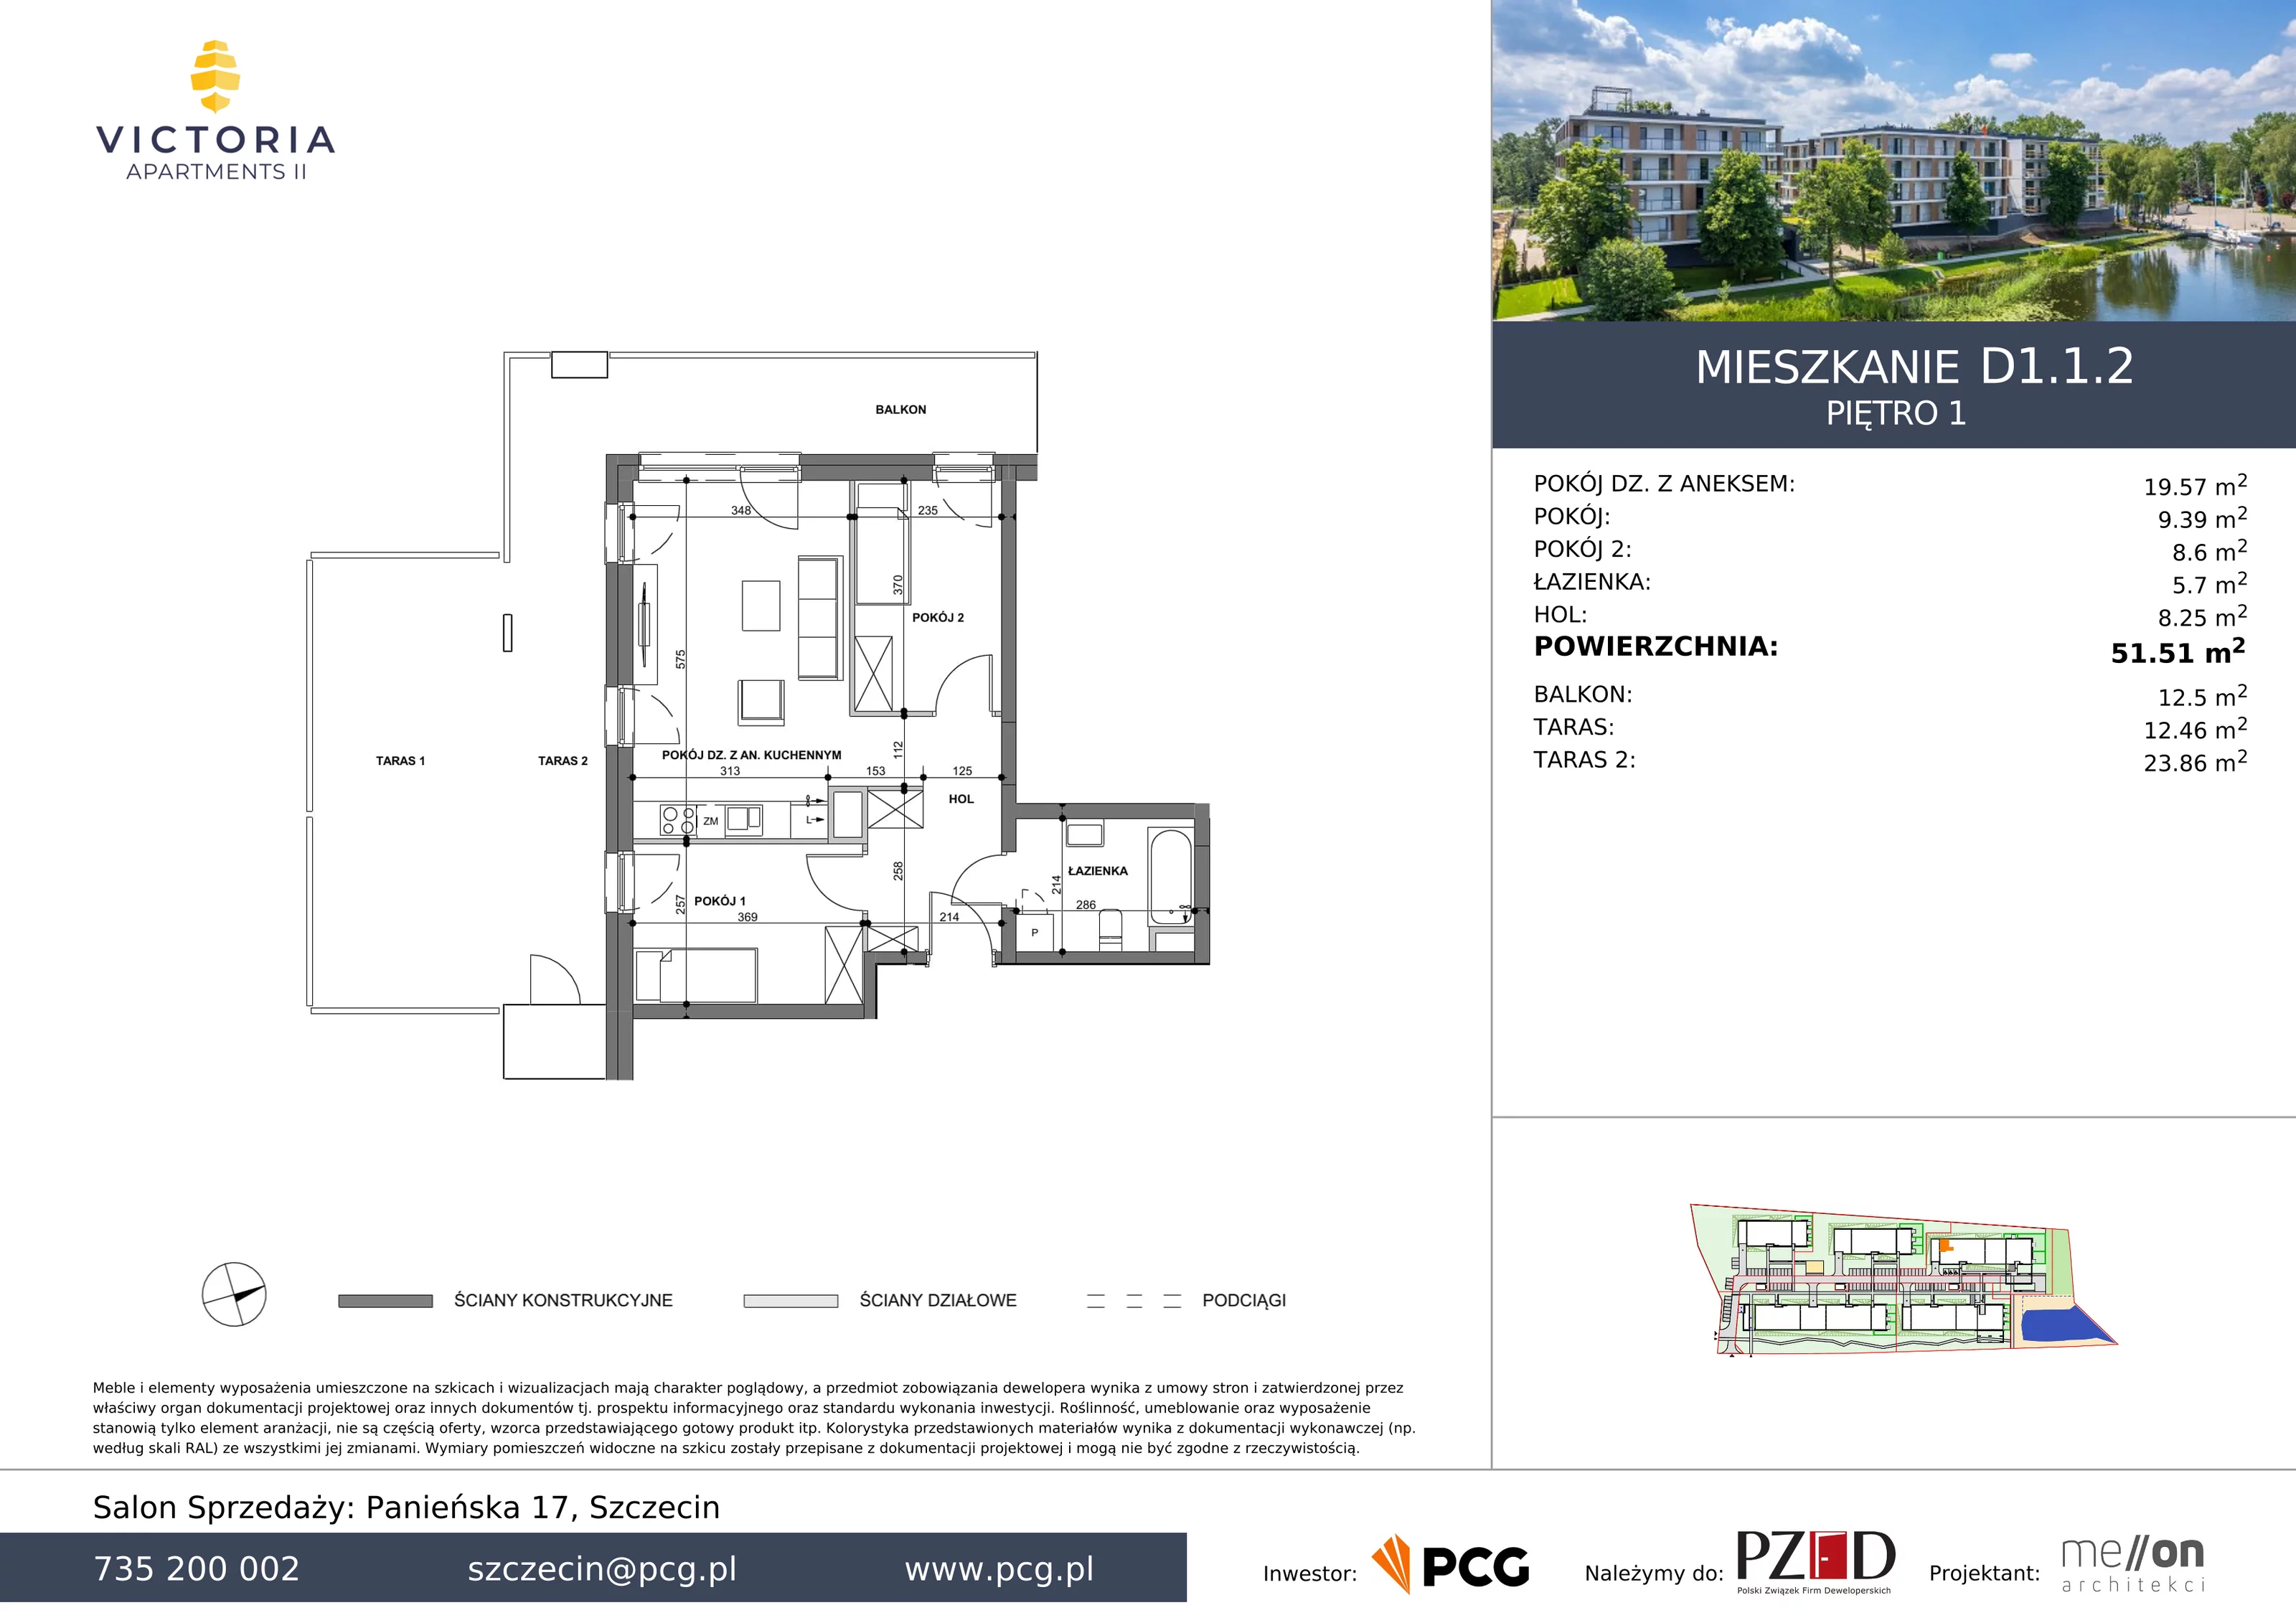 Apartament 51,51 m², piętro 1, oferta nr D1.1.2, Victoria Apartments II, Szczecin, Prawobrzeże, Dąbie, ul. Przestrzenna